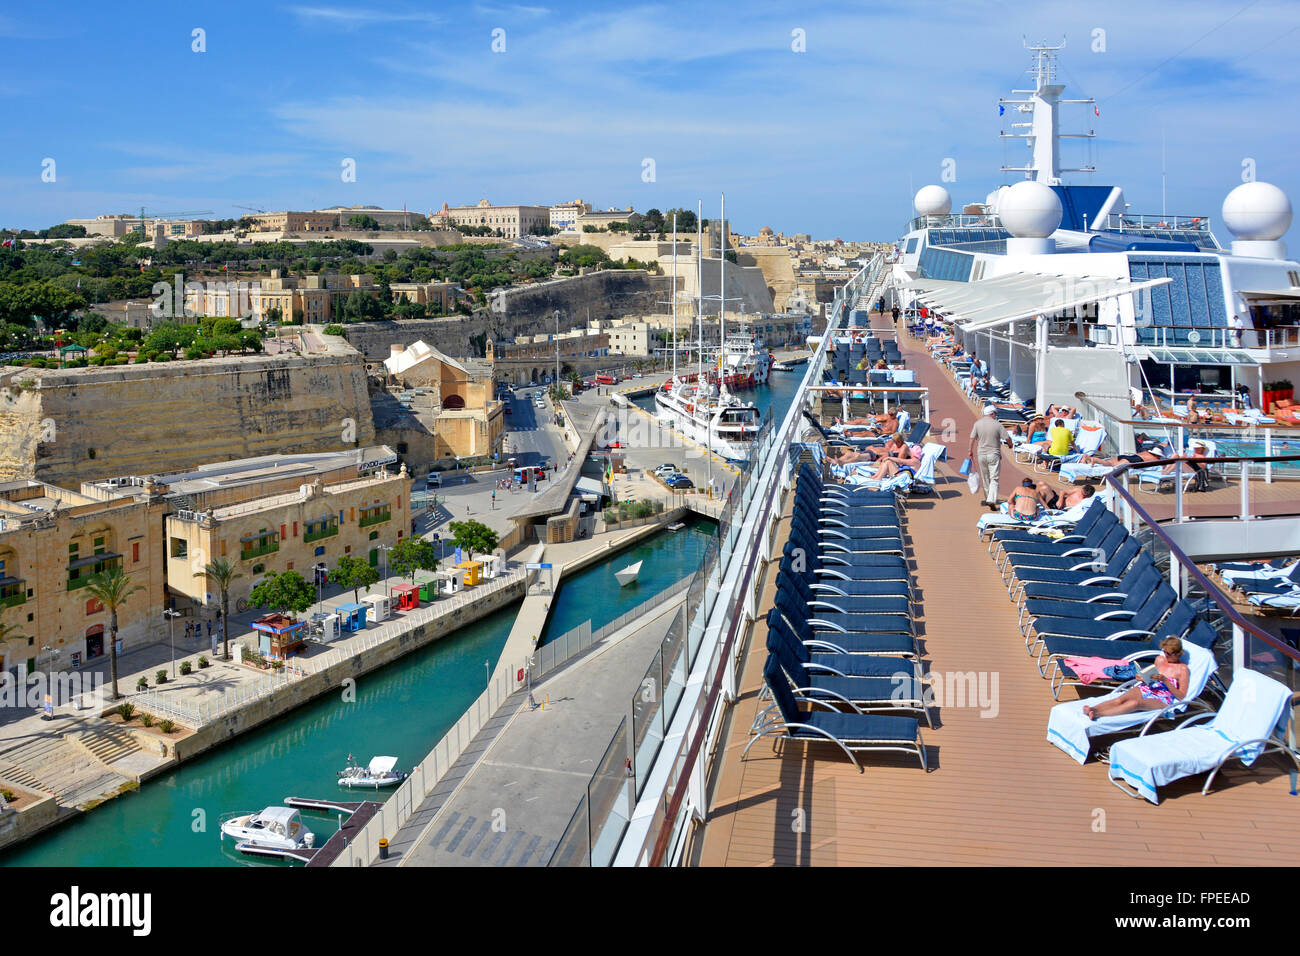 Bateau de croisière méditerranéen paquebot Sundeck de grand grand navire moderne dans le port et la ville de la Valette Malte passagers bronzer plutôt que d'aller à terre Banque D'Images